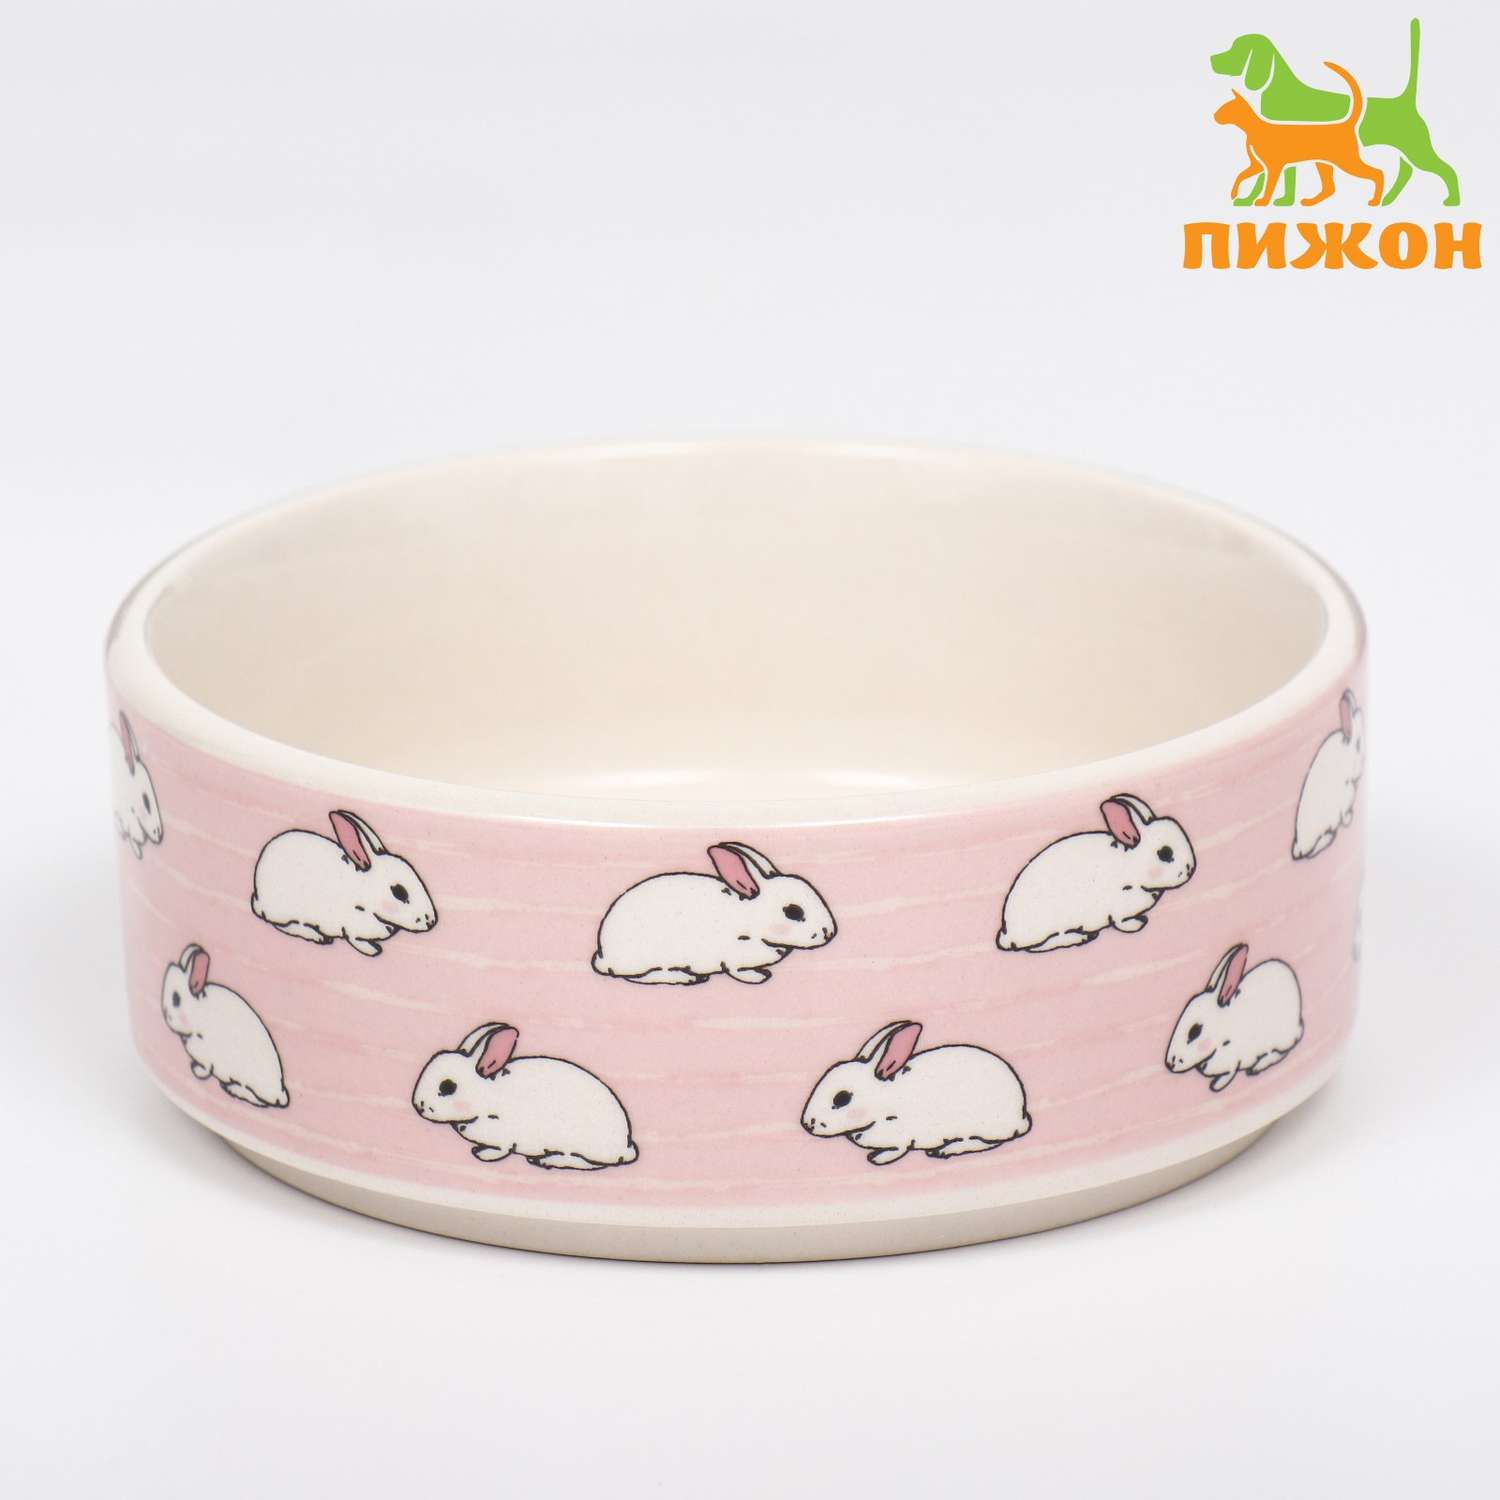 Миска Пижон керамическая «Кролики» 200 мл 10.5х4 см розовая - фото 1